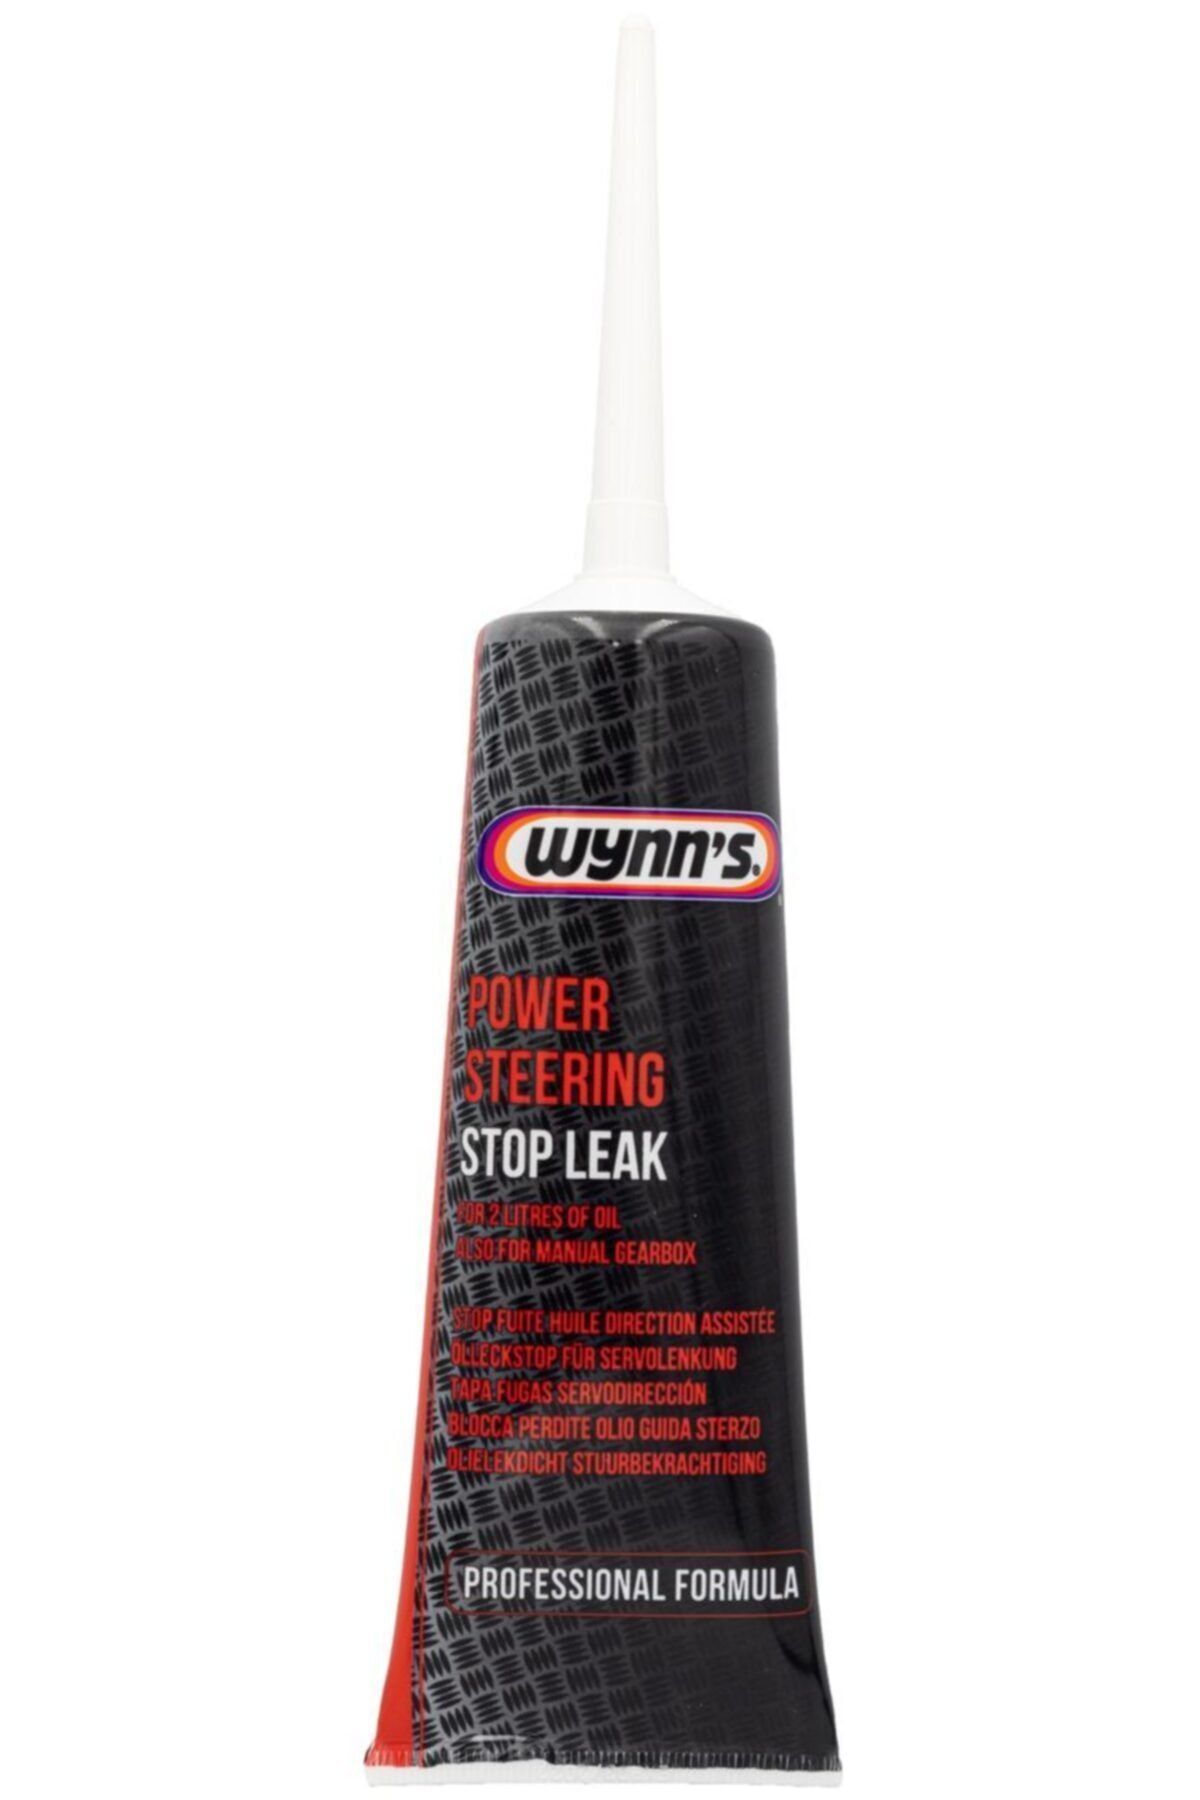 Wynns Power Steering Stop Leak Wynn's Hidrolik Direksiyon Sızıntı Kaçak Önleyici Yağ Katkısı 125ml